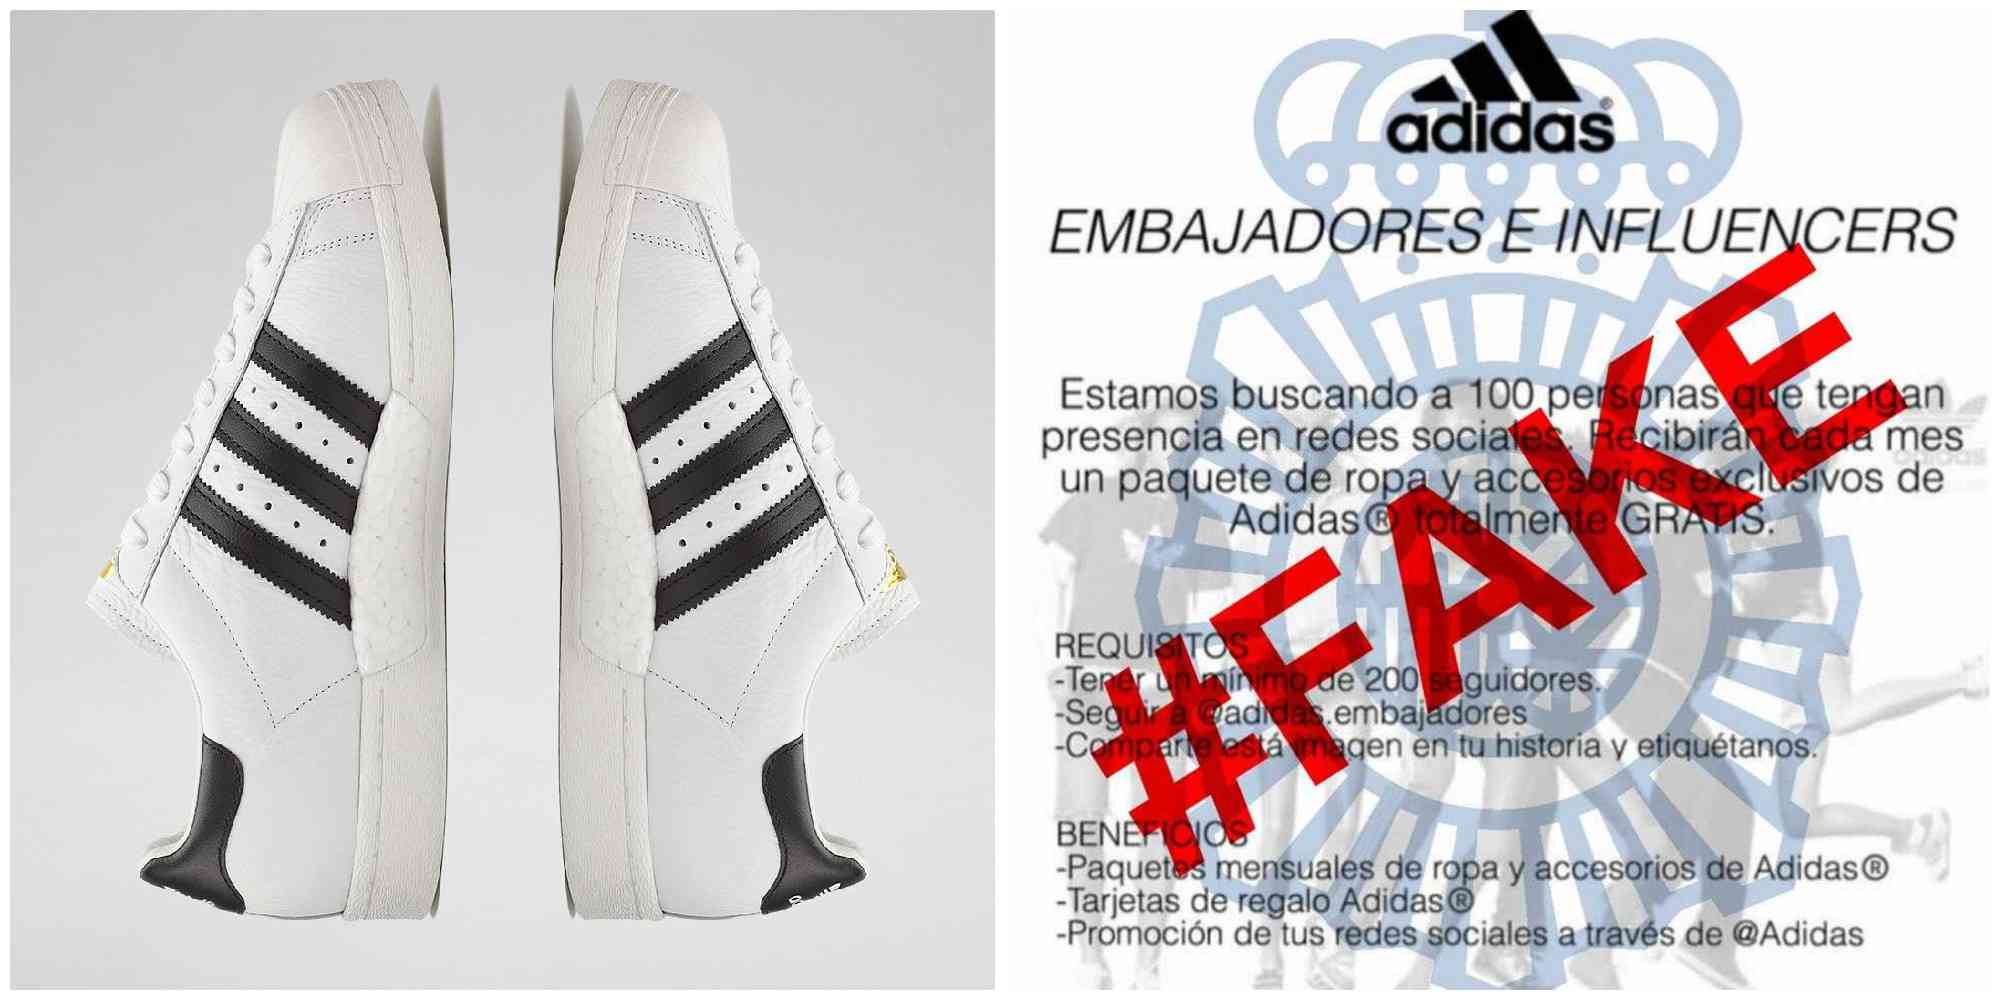 Sea embajador de Adidas o Nike”: La estafa en la que están cayendo los de Instagram